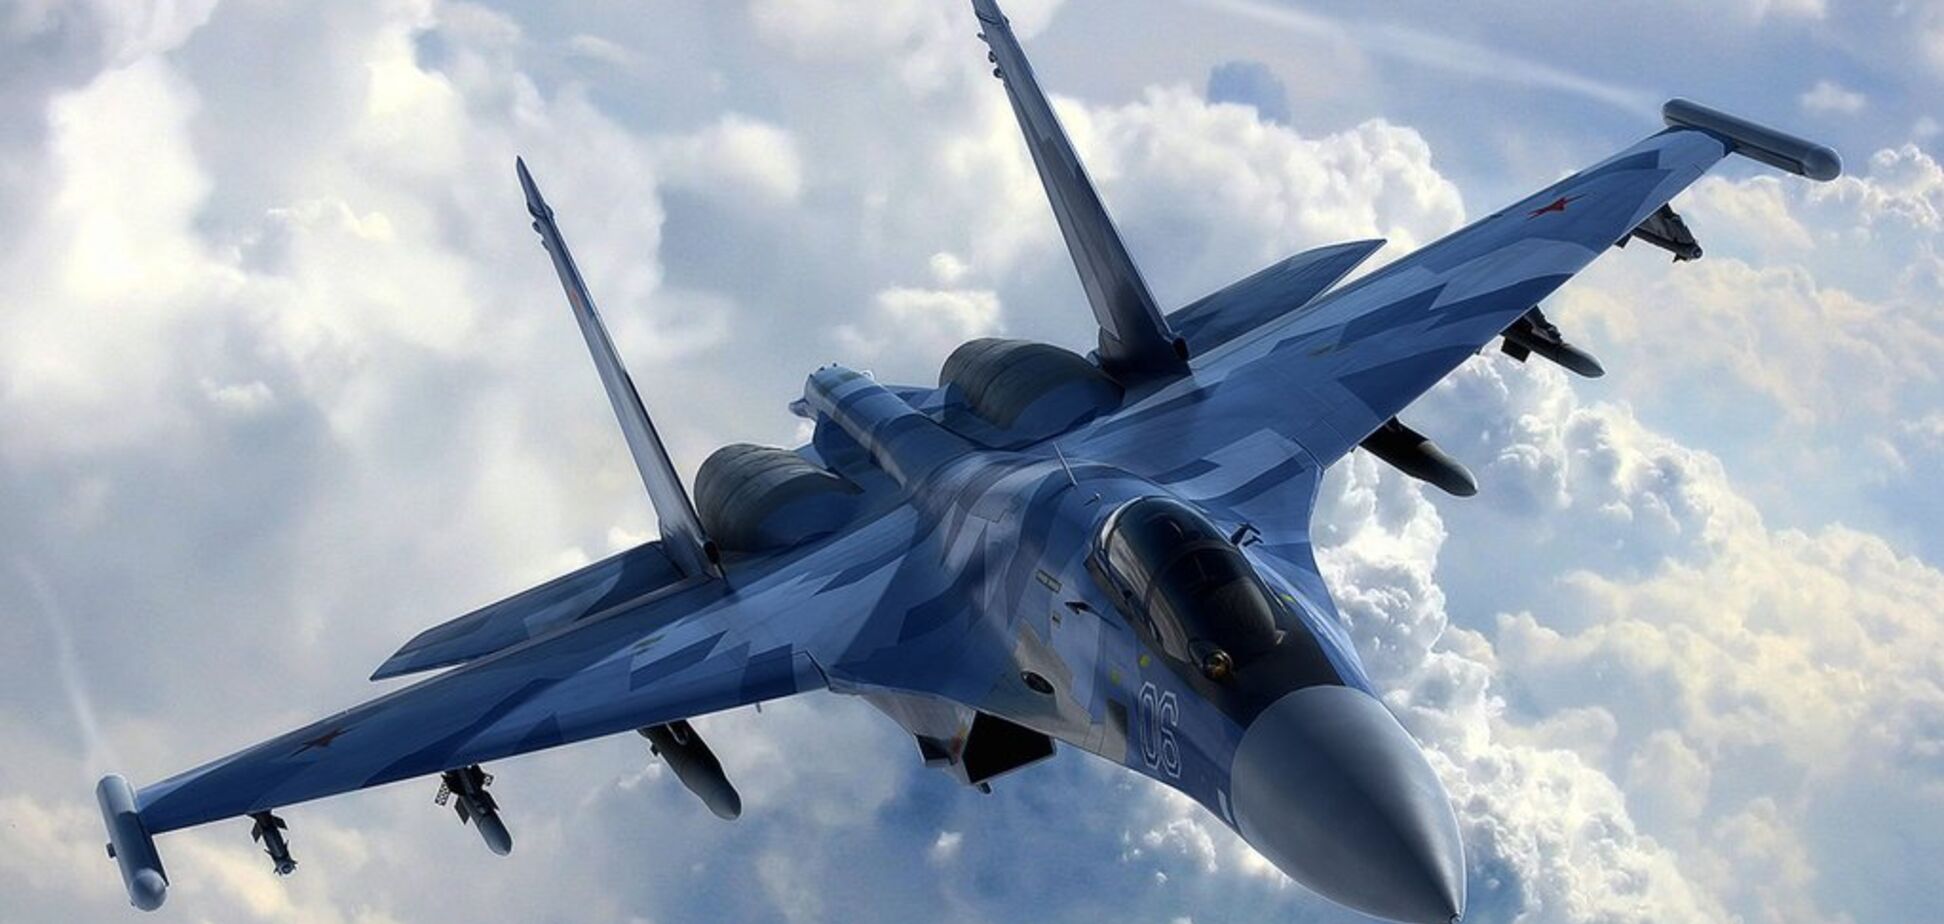  Истребители НАТО снова 'сцепились' в небе с самолетами Путина: детали инцидента